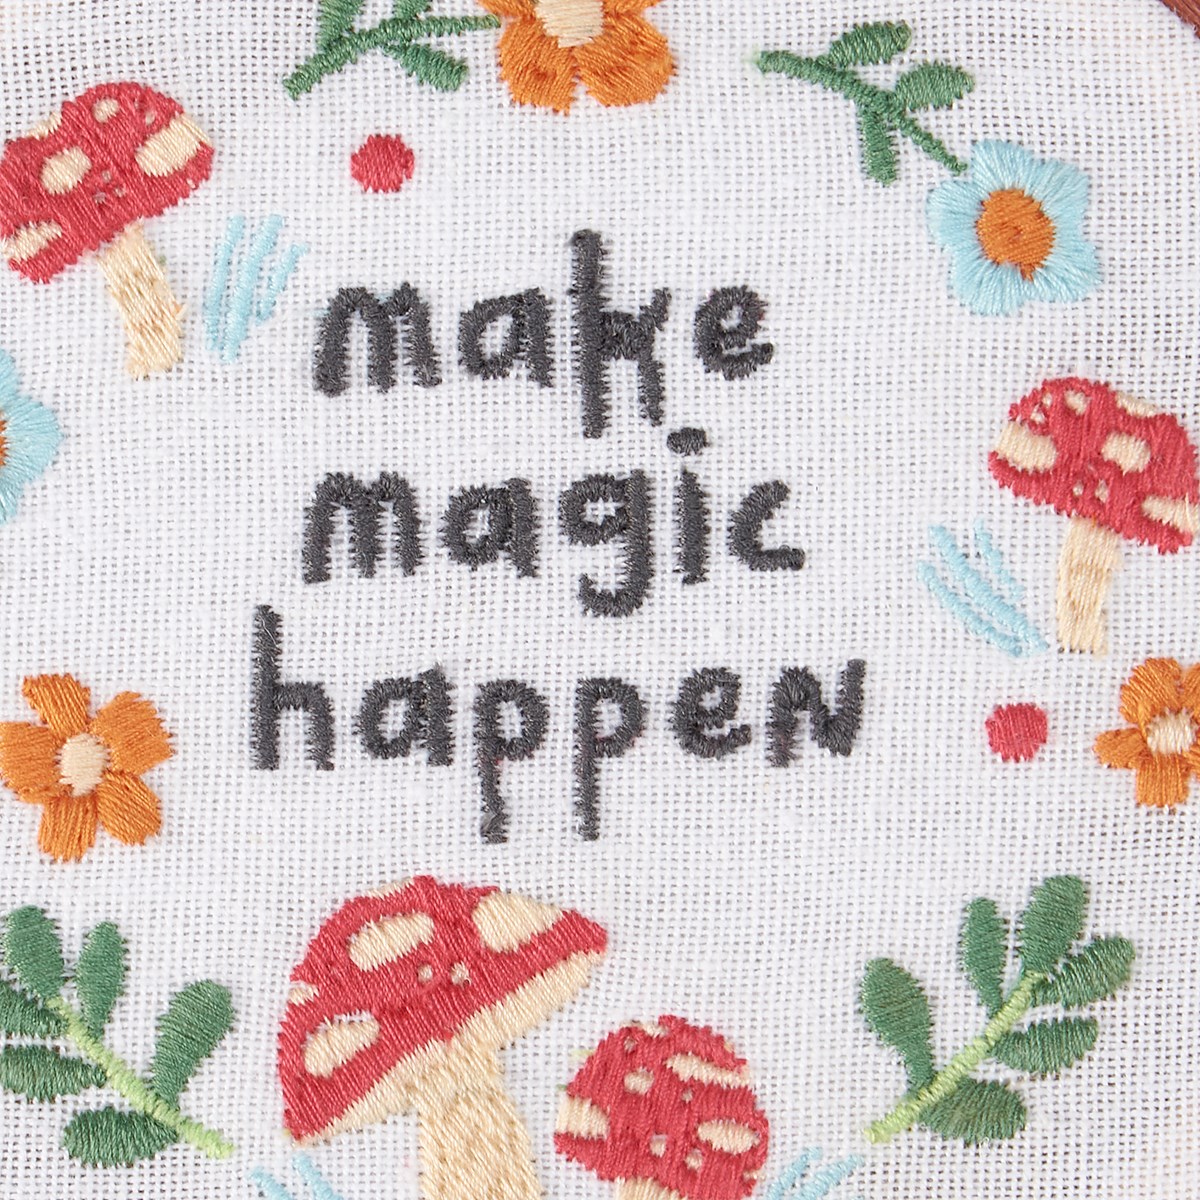 Make Magic Happen Hoop - Cotton, Linen, Wood, Metal